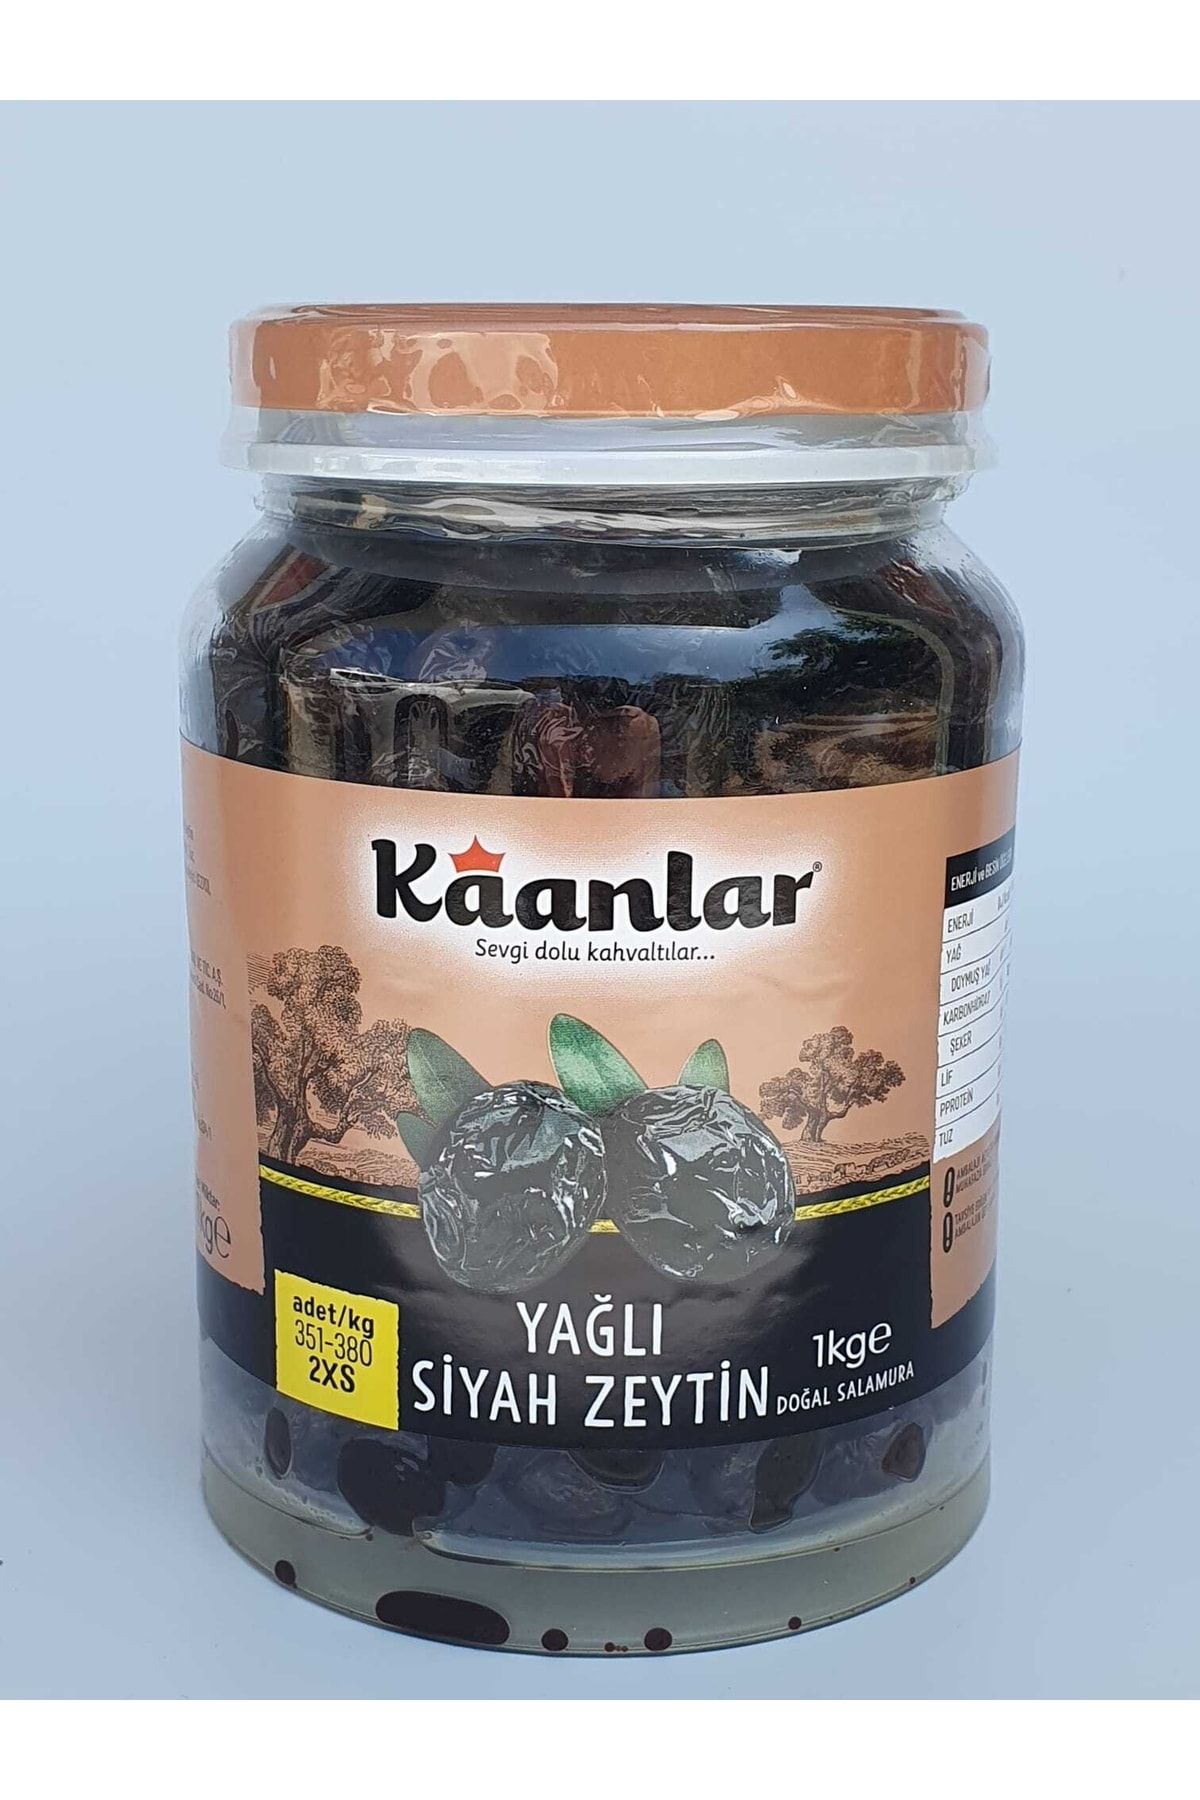 Kaanlar Doğal Salamura Yağlı Siyah Zeytin Premium 1000 Gr ( 351-380 2xs) 6 Kg